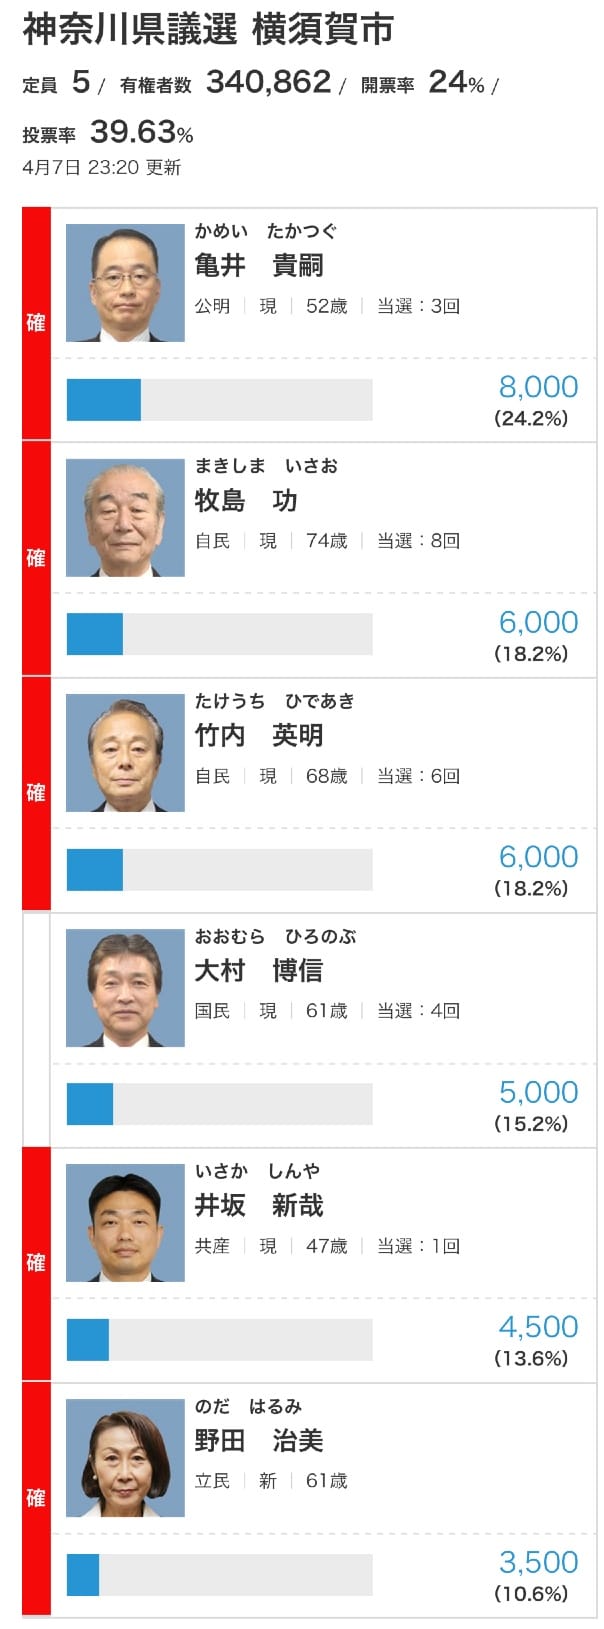 NHK横浜支局の選挙速報サイトより